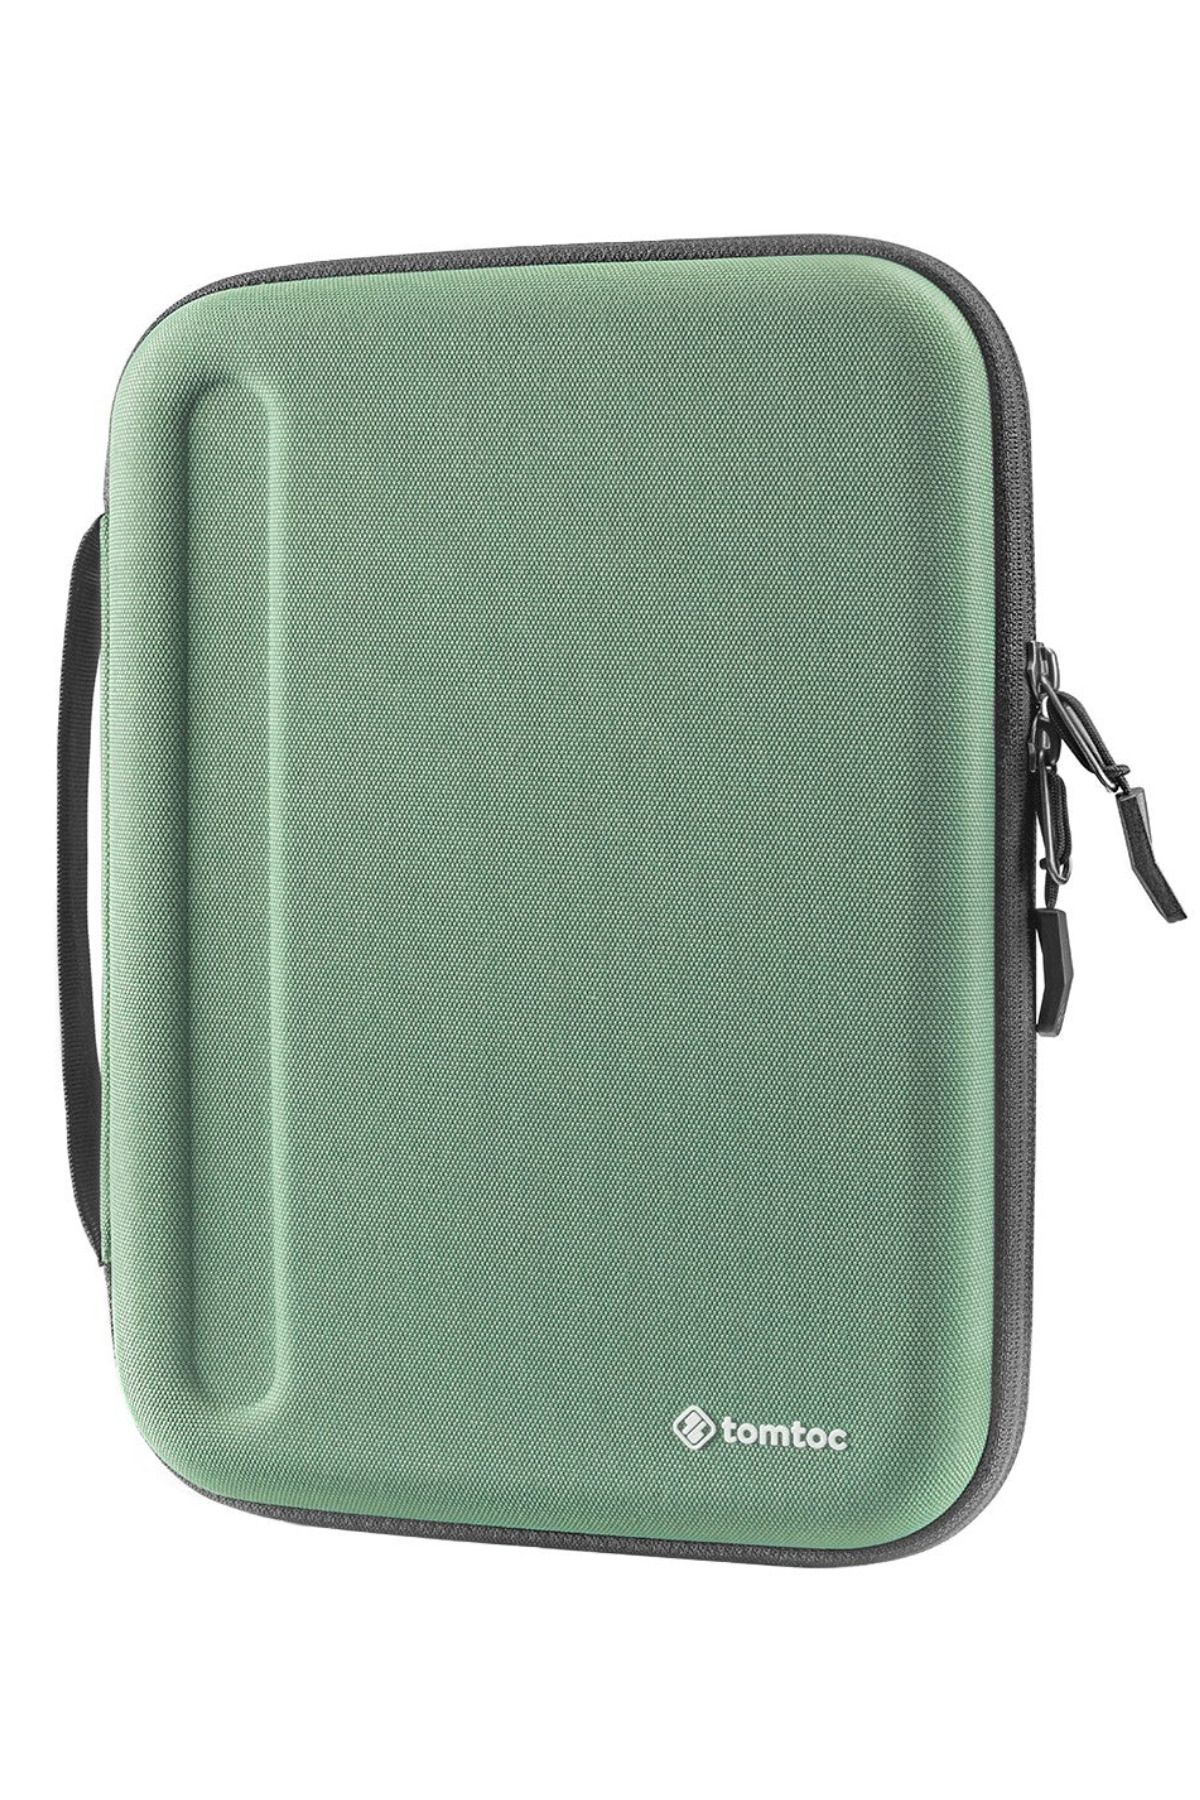 Tomtoc Fancy Case A06 10 - 10.9 - 11 Inç Ipad Air & Pro Su Geçirmez Yeşil Ipad Kılıf Taşıma Çantası